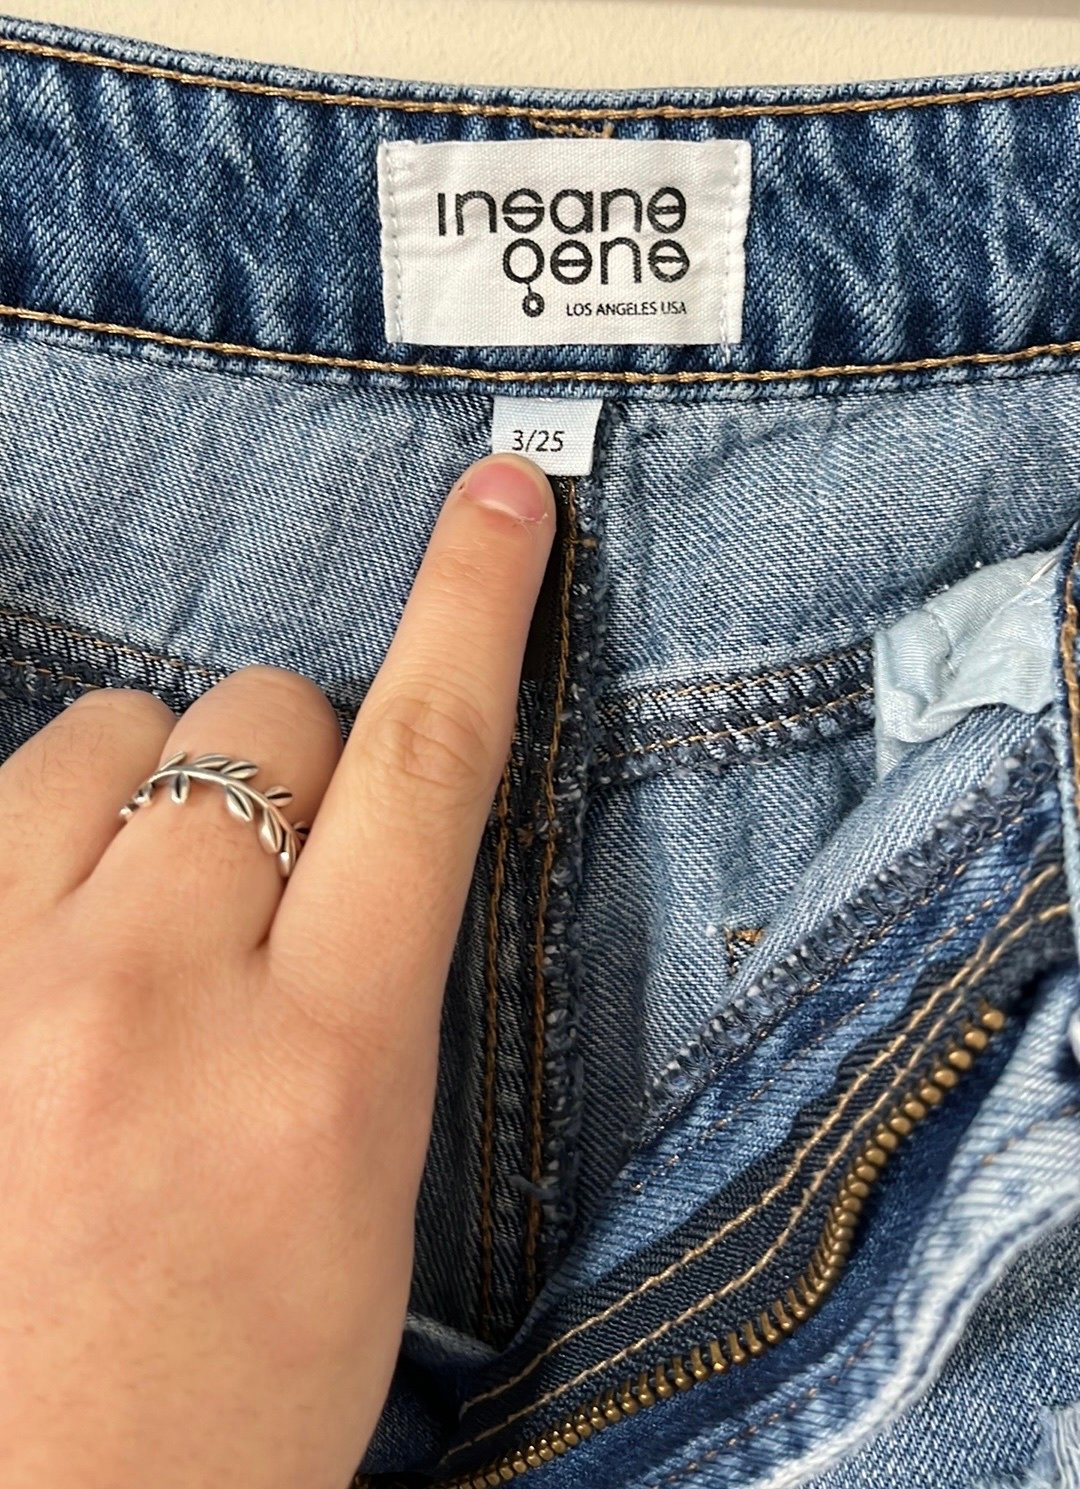 floor price Insane Gene Light Wash Super Distressed High Rise Girlfriend Denim Jeans Size 25 n8hcU5HvZ online store